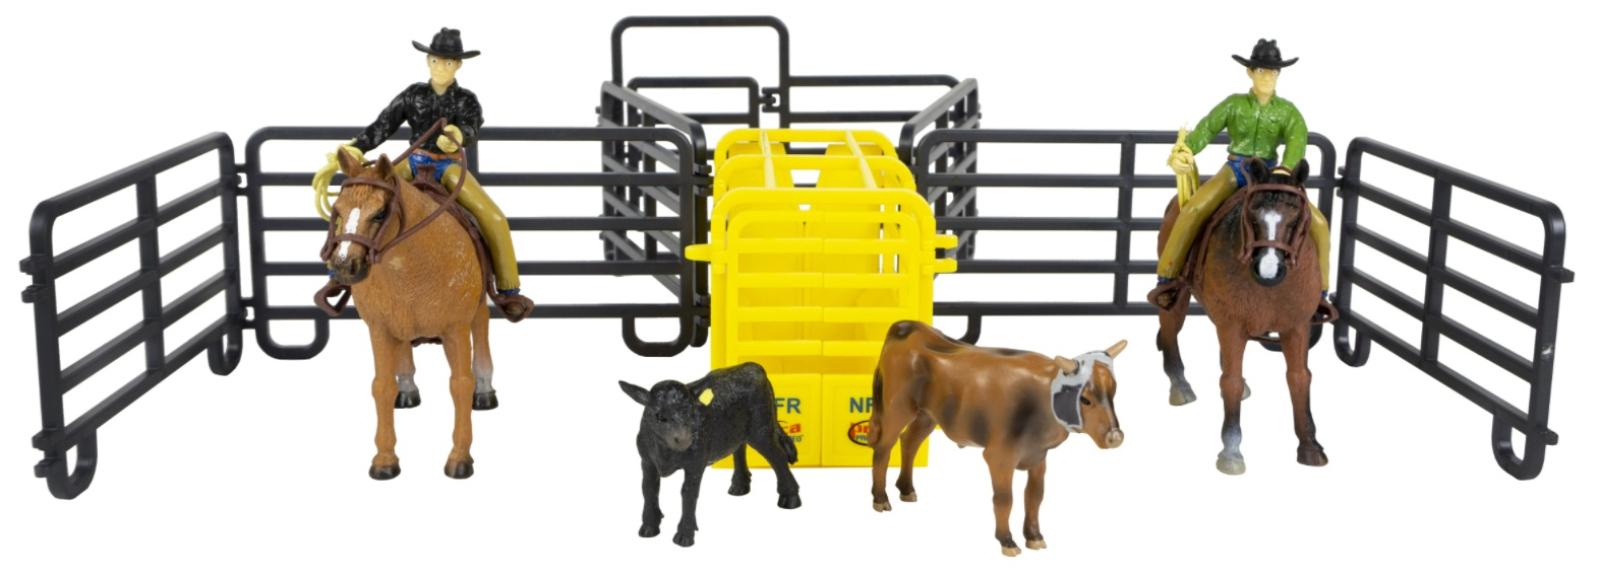 Big Country Farm Toys 14 Piece Roper Set